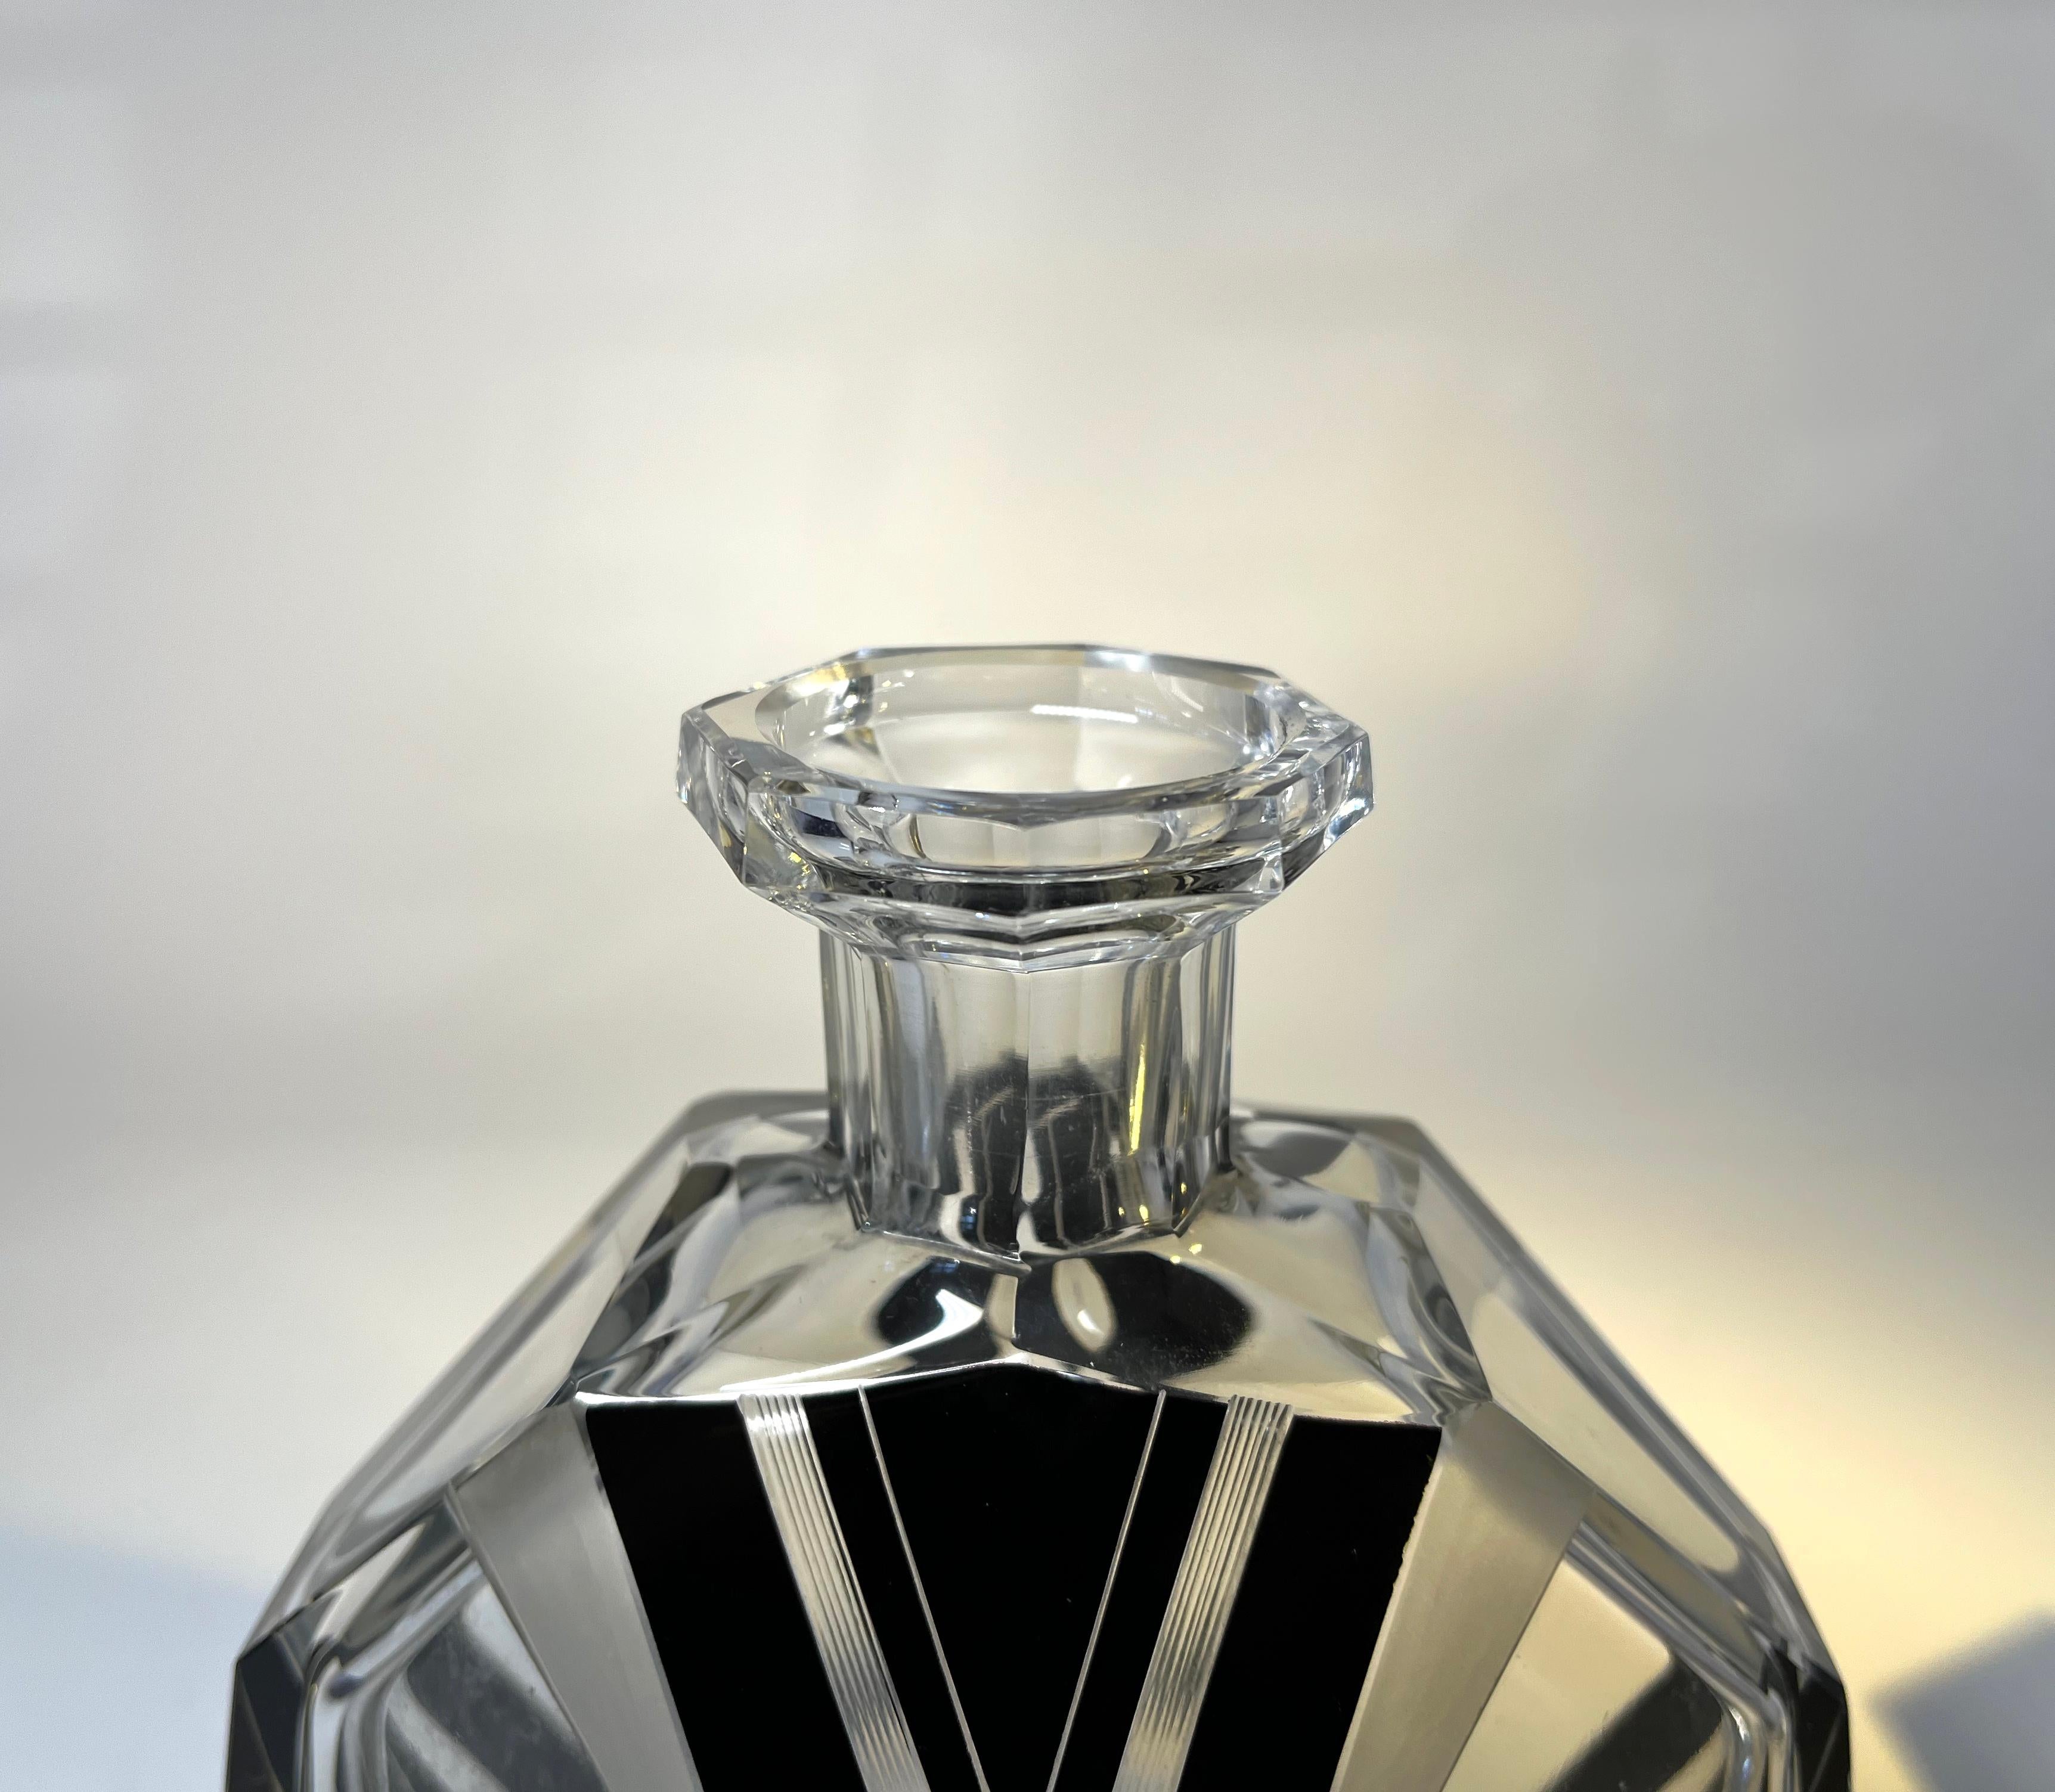 Oversized, Decadent Art Deco Czech Crystal Bohemian Perfume Flacon 1930's For Sale 1